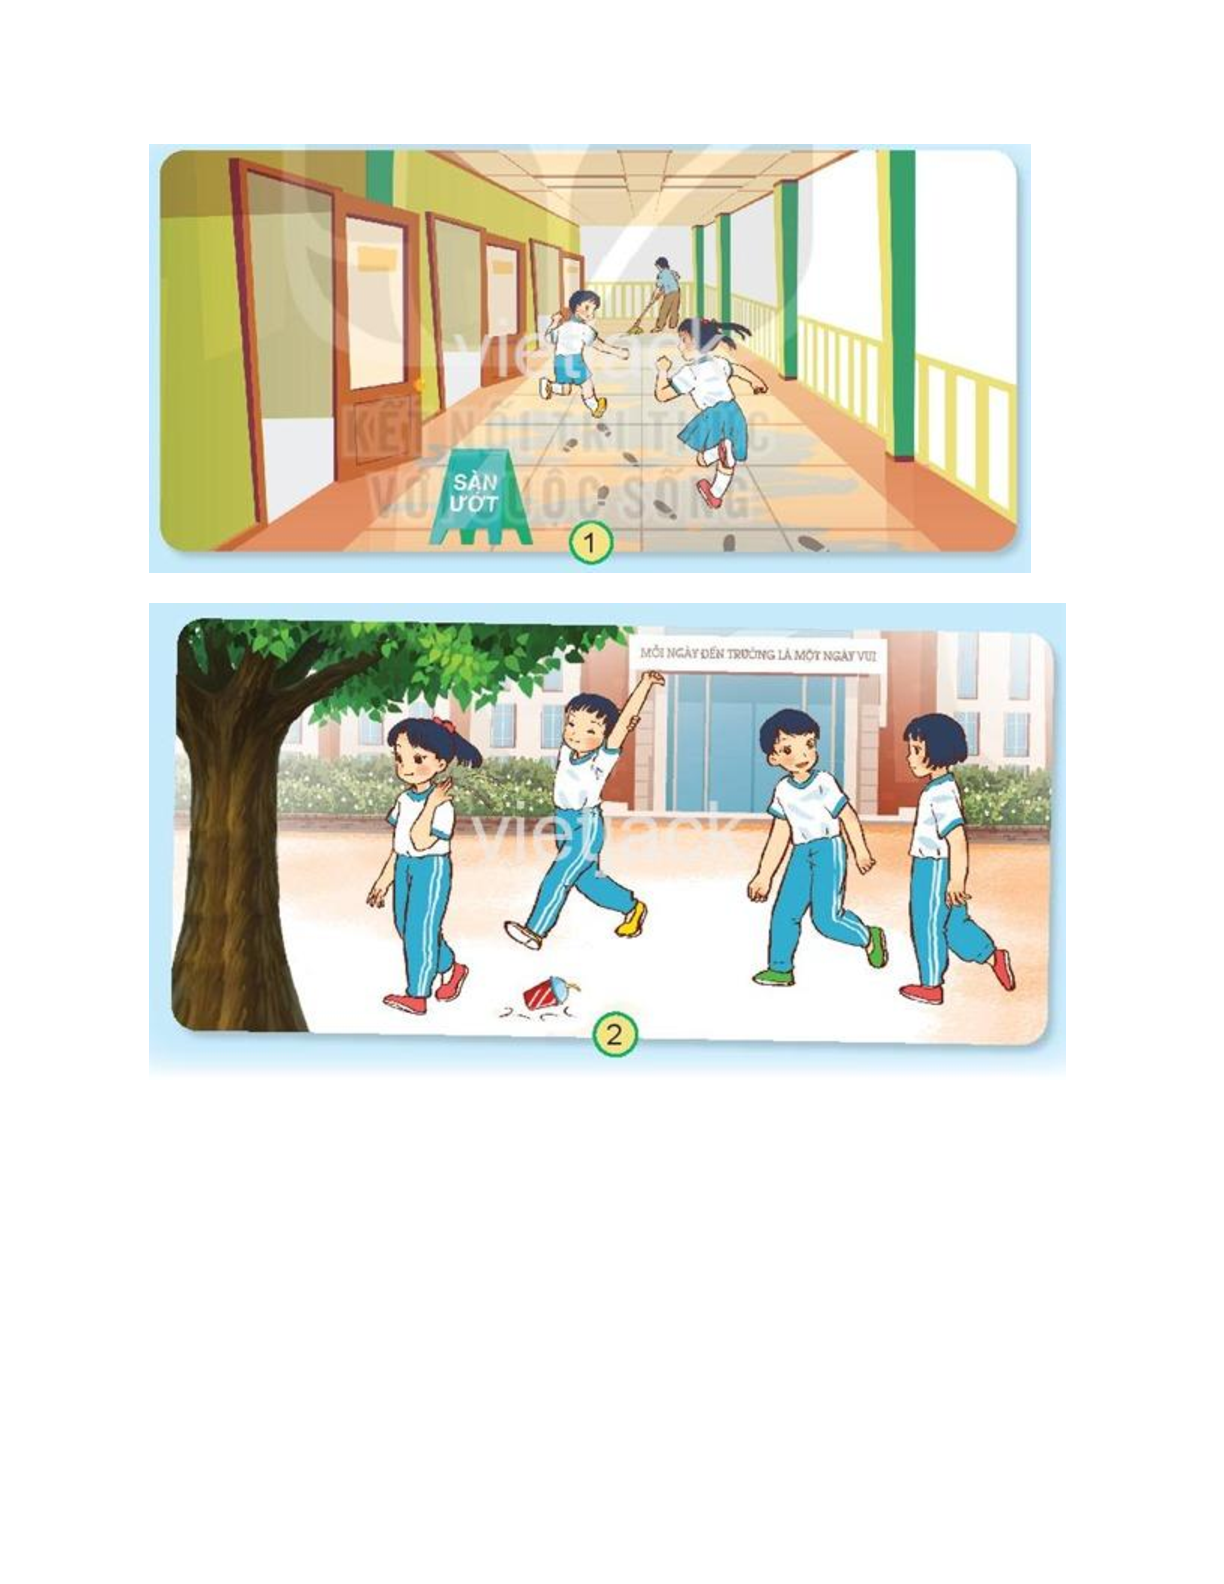 Giải SGK Tự nhiên và Xã hội lớp 2 trang 36, 37, 38, 39 Bài 9: Giữ vệ sinh trường học - Kết nối tri thức (trang 2)